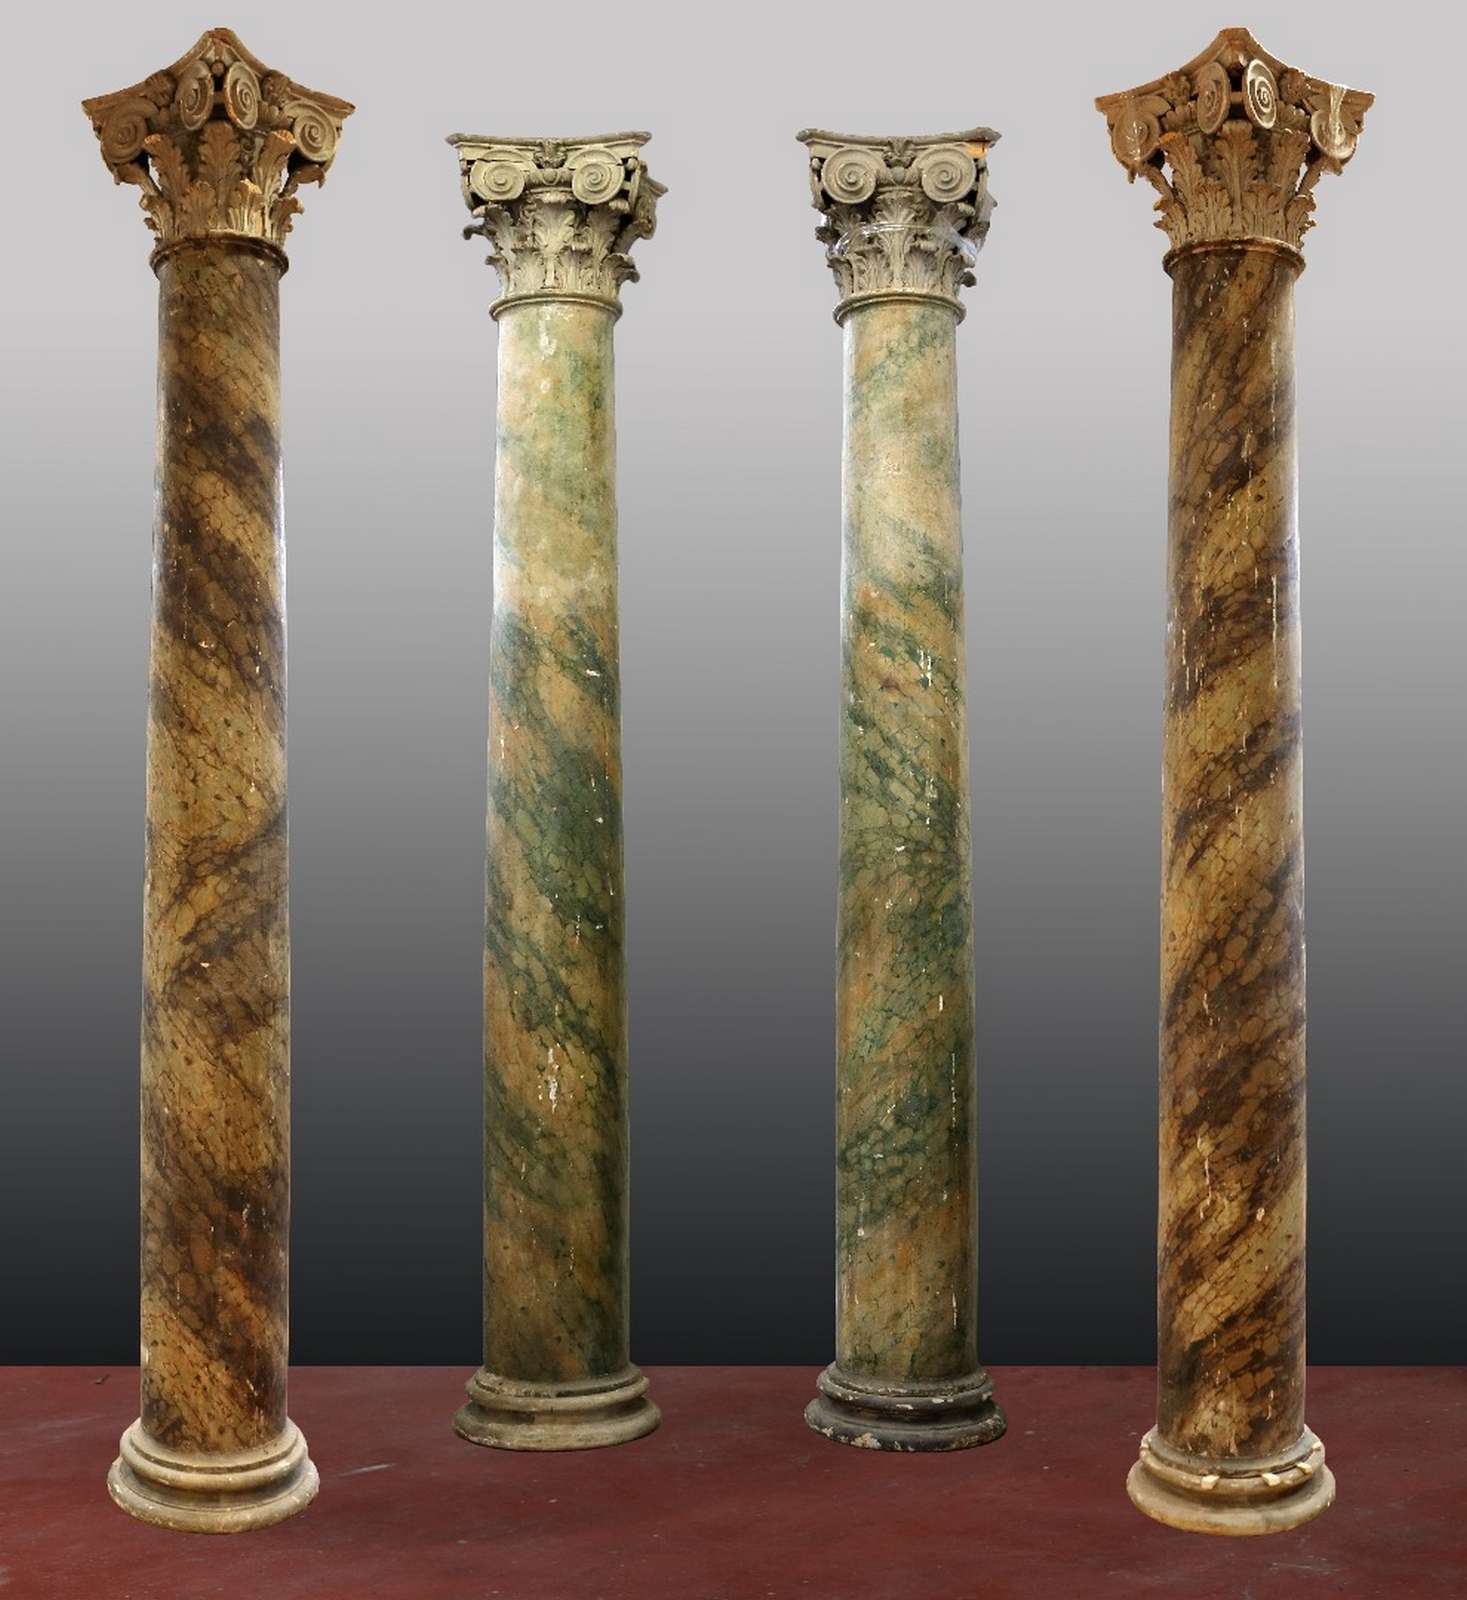 Quattro antiche colonne in legno. Epoca Luigi XIV. - Colonne antiche - Architettura - Prodotti - Antichità Fiorillo